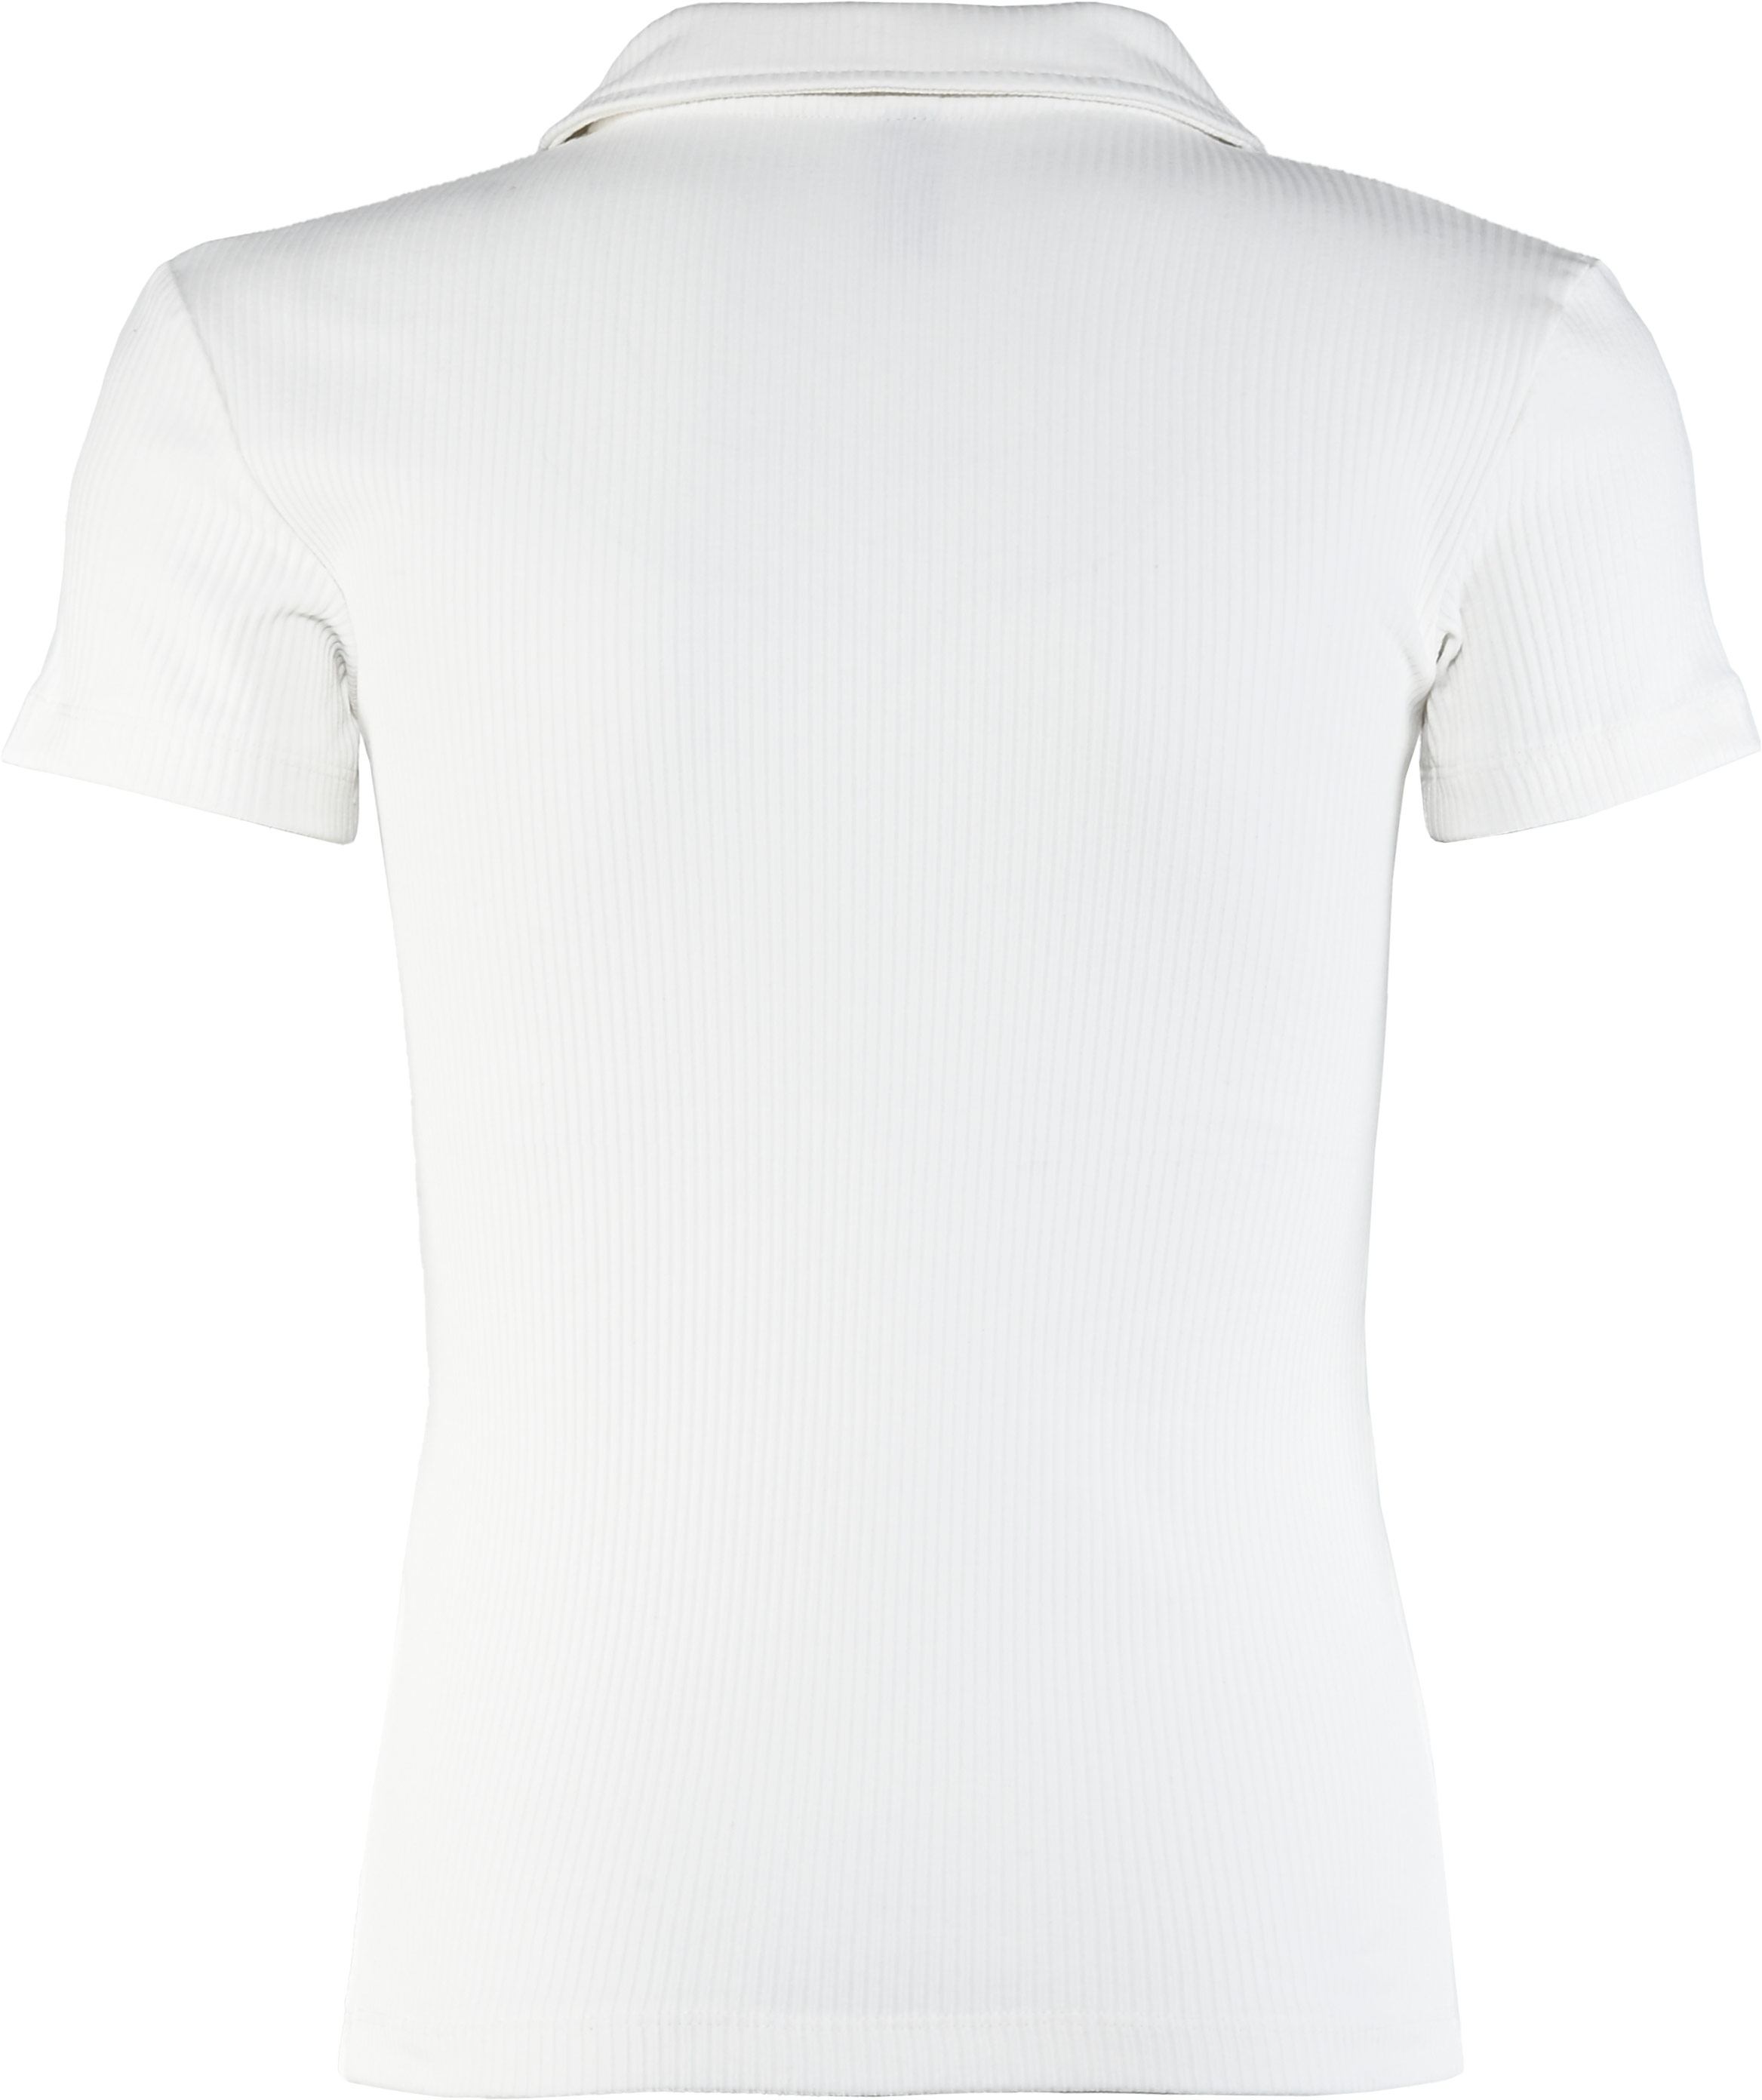 5890-Girls Polo T-Shirt